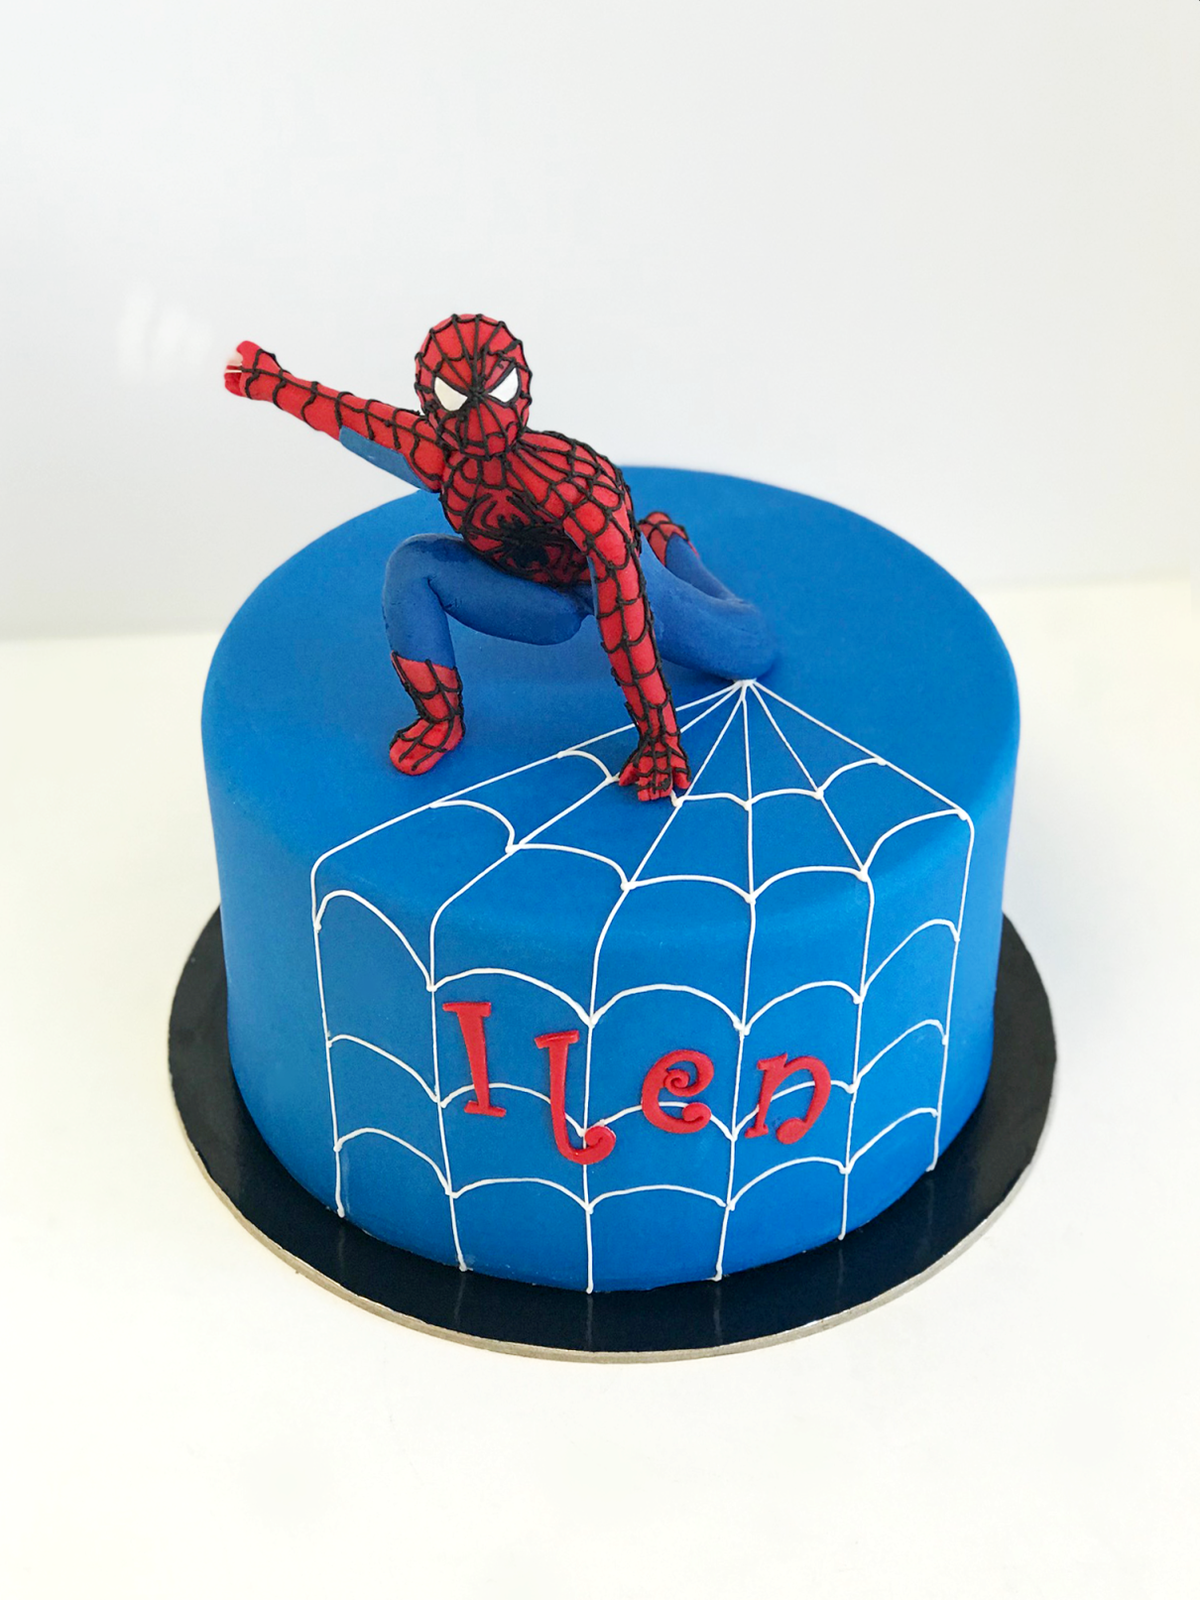 Whippt Spiderman Cake June 2018